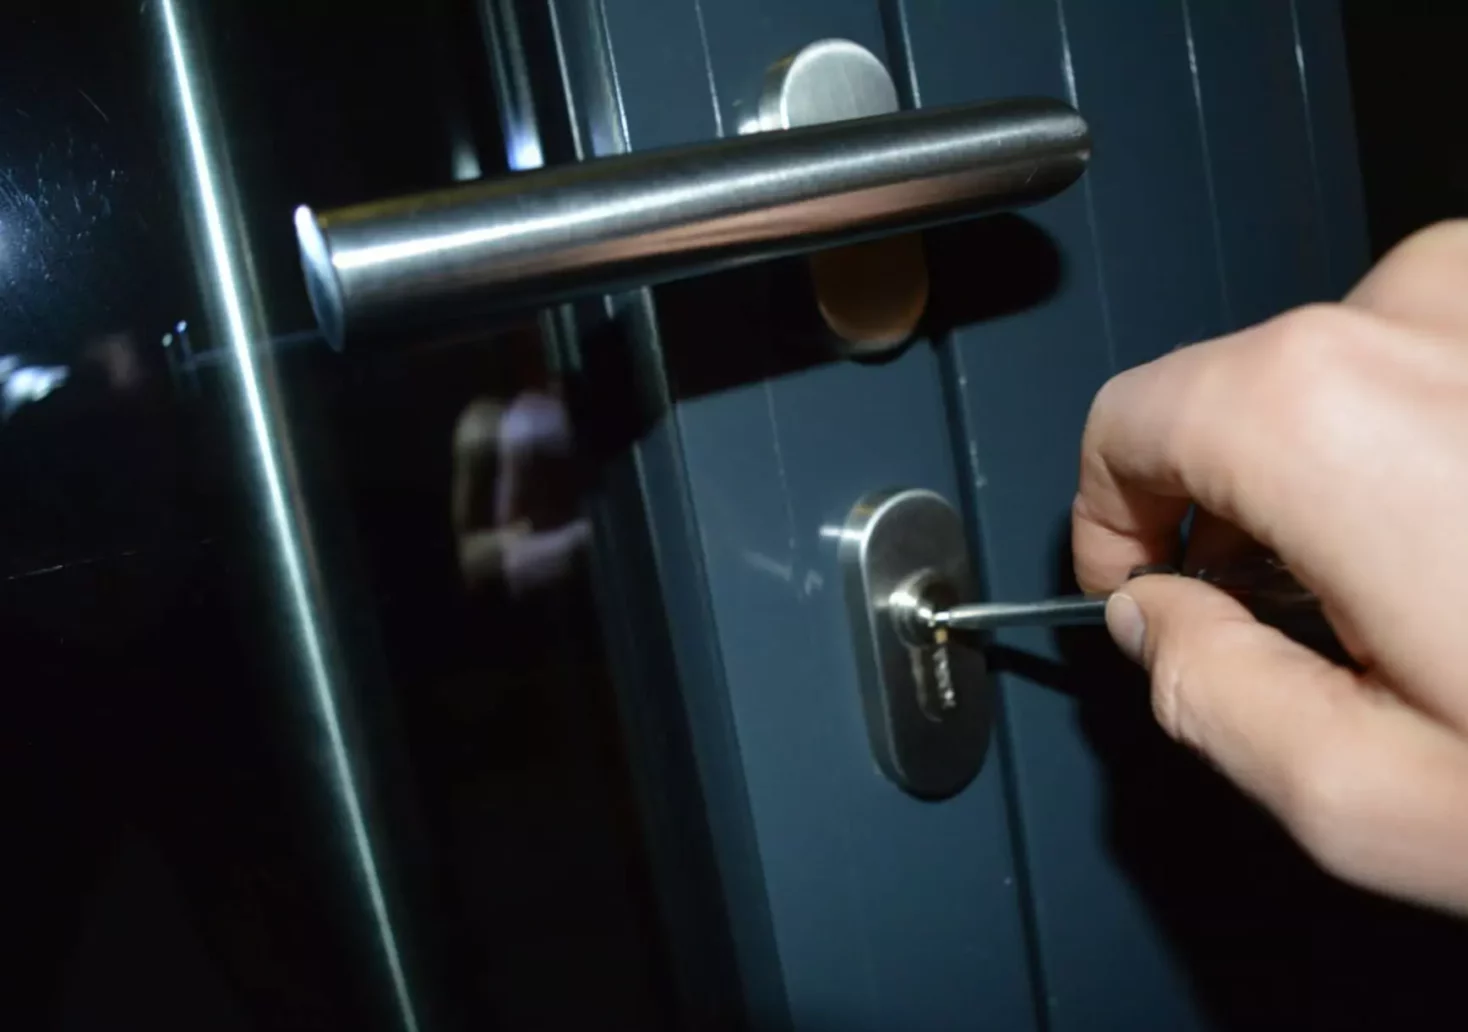 Ein Bild auf 5min.at zeigt, wie jemand bei Nacht versucht, eine Tür mit einem Werkzeug aufzubrechen.